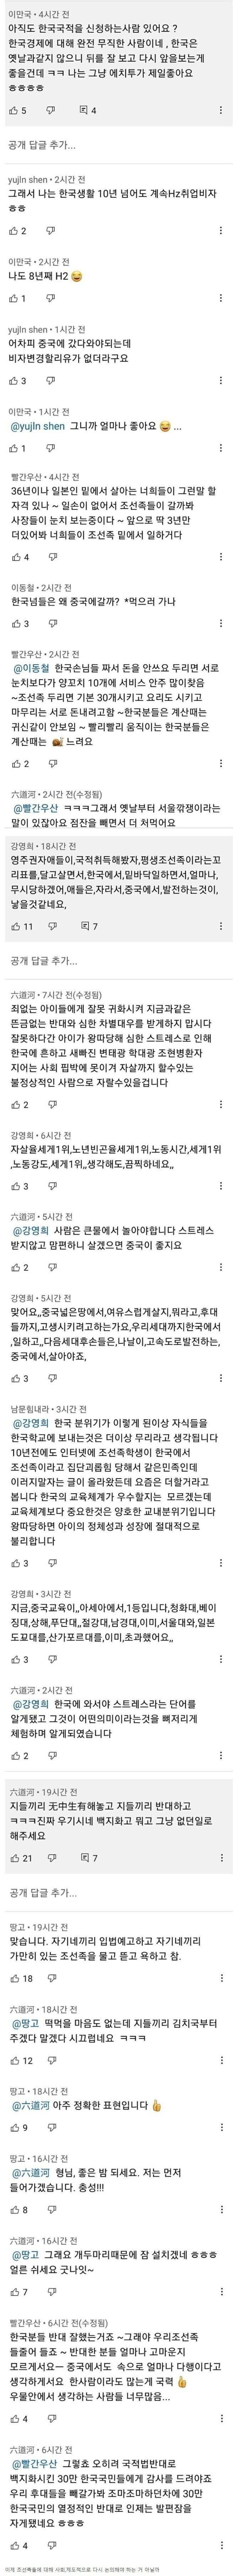 한국 국적이 싫다는 조선족들 .jpg